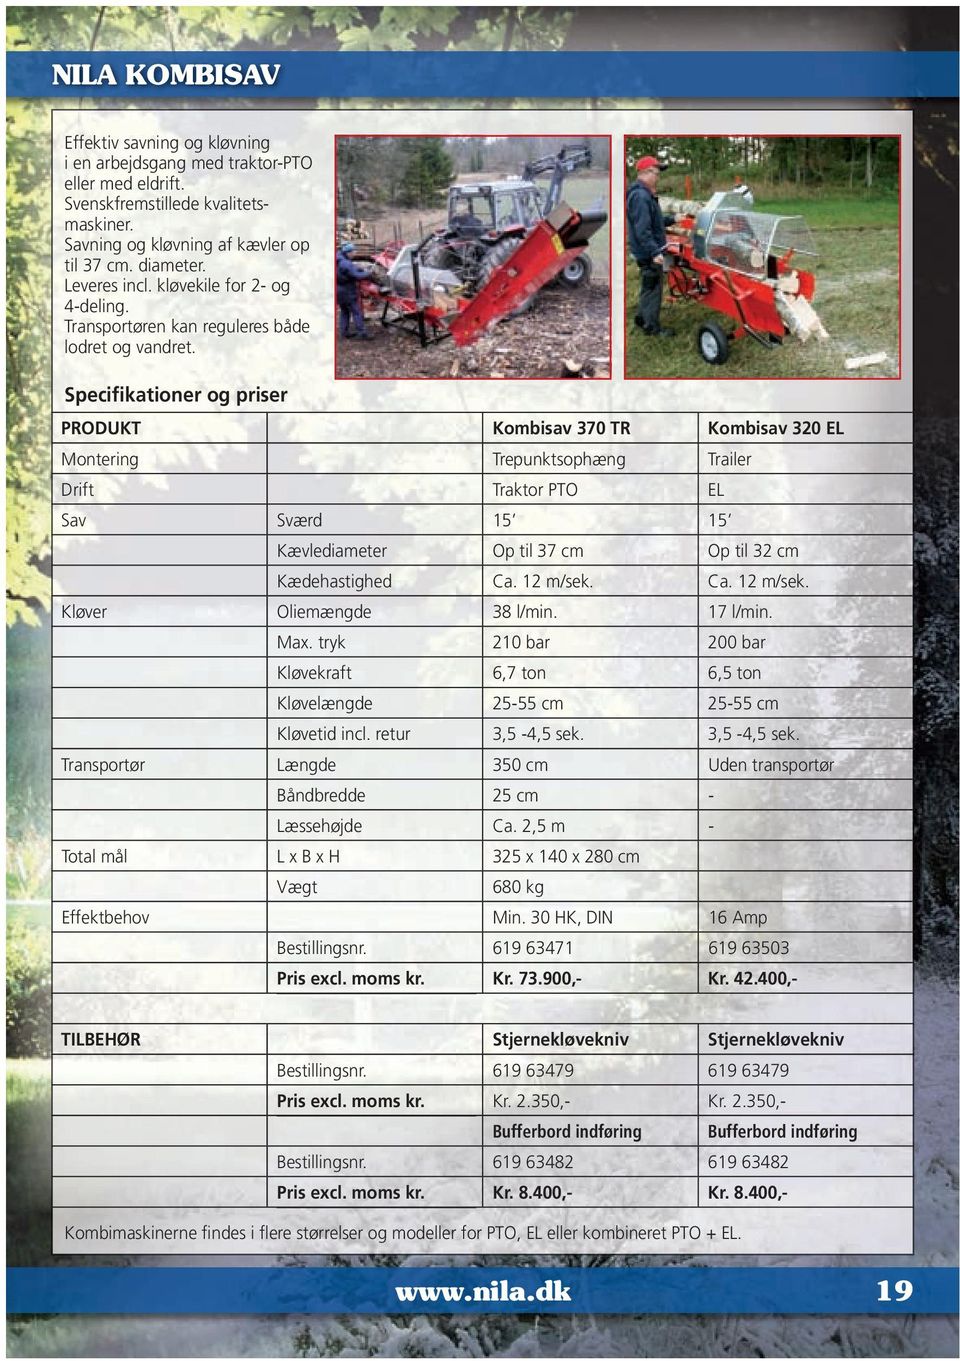 Specifikationer og priser PRODUKT Kombisav 370 TR Kombisav 320 EL Montering Trepunktsophæng Trailer Drift Traktor PTO EL Sav Sværd 15 15 Kævlediameter Op til 37 cm Op til 32 cm Kædehastighed Ca.